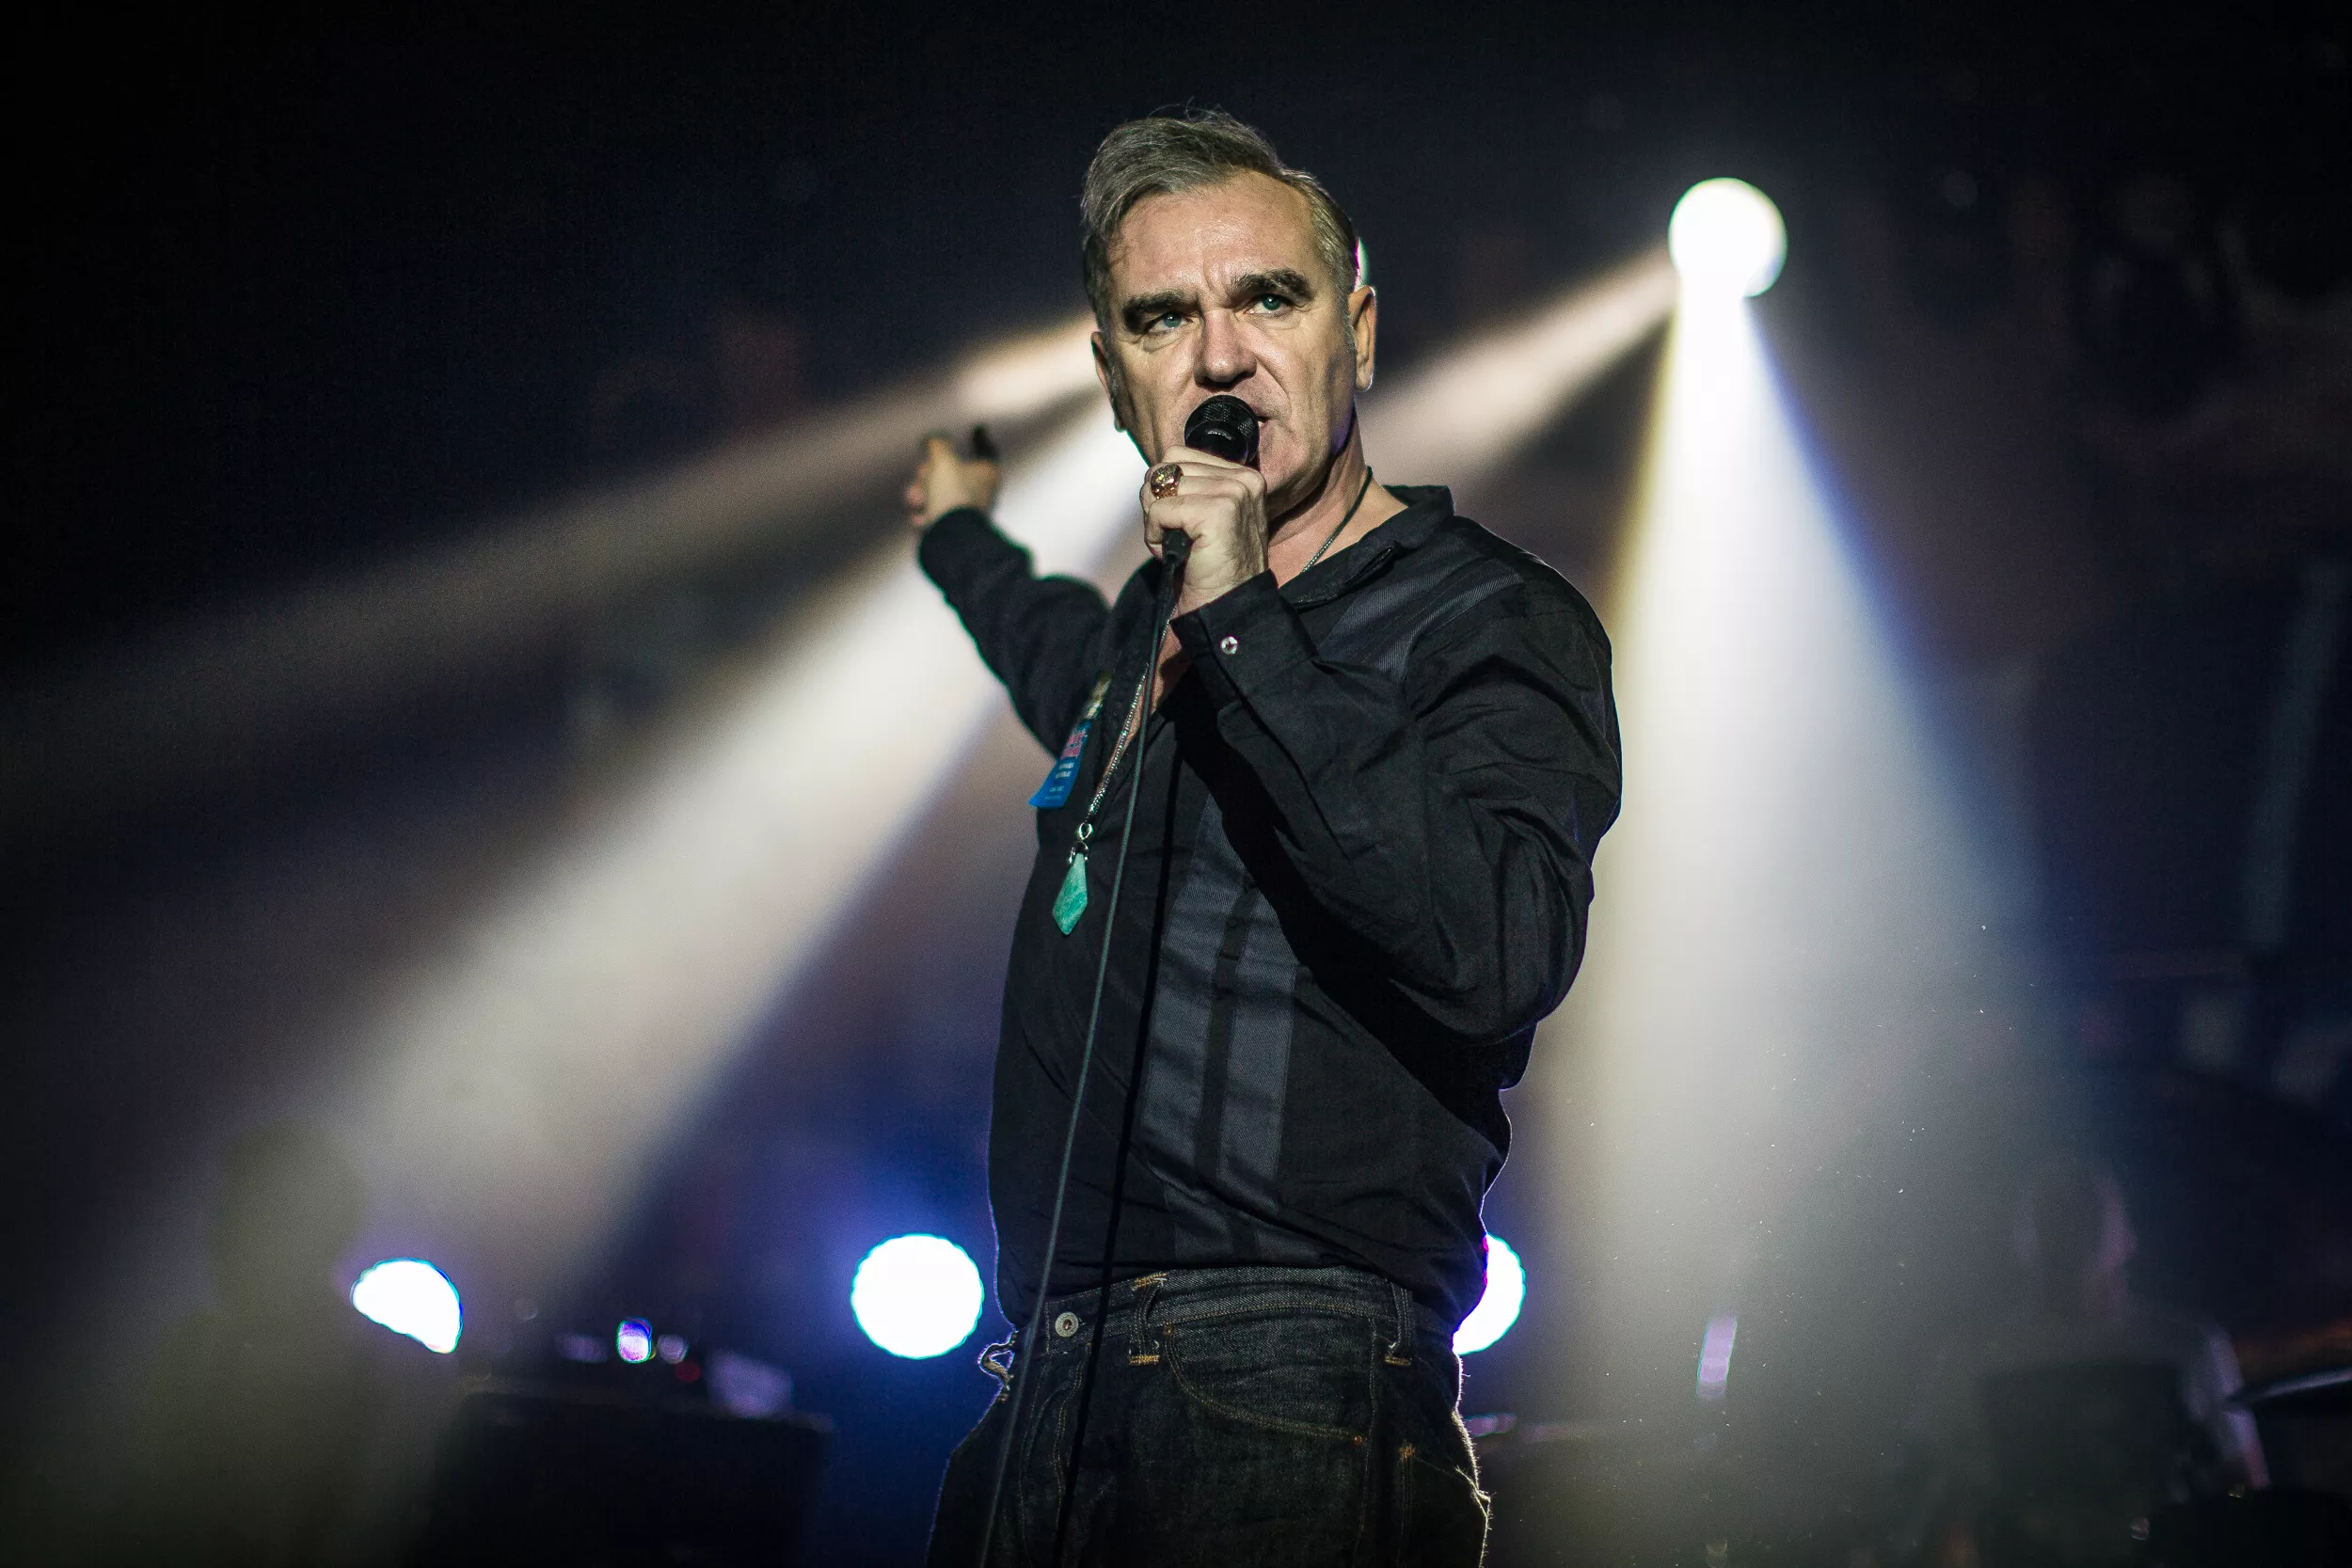 Internett gjør narr av grunnen til Morrisseys siste konsertavlysning